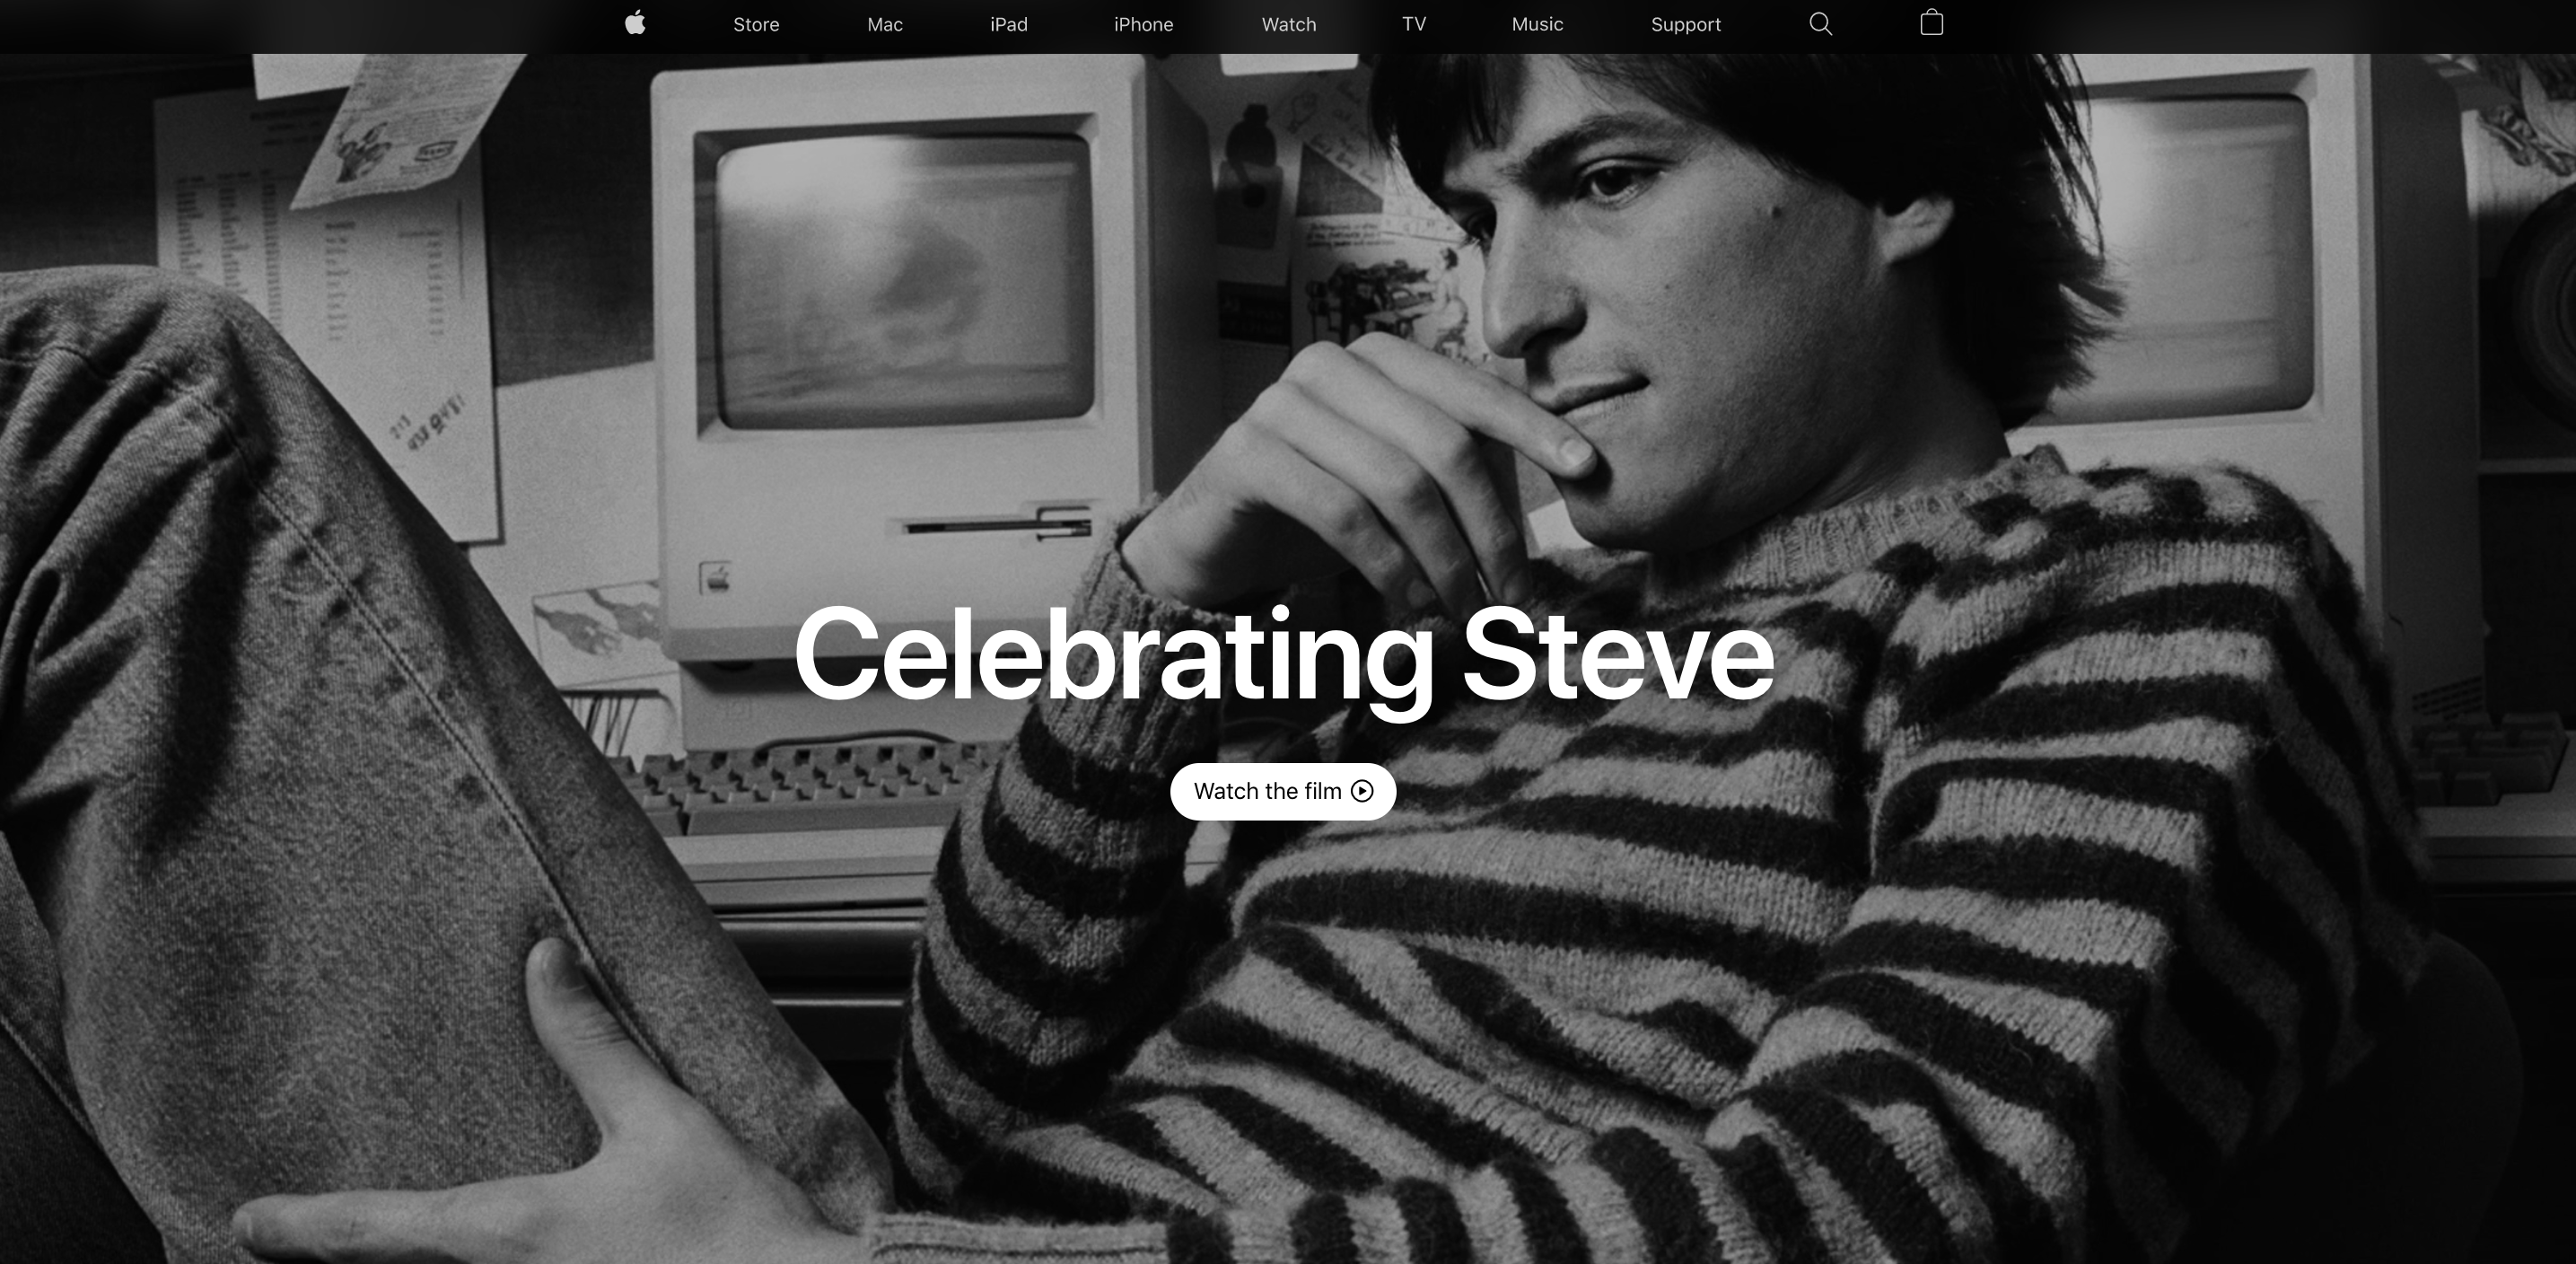 alt="Apple รำลึก 10 ปีการจากไปของ Steve Jobs"